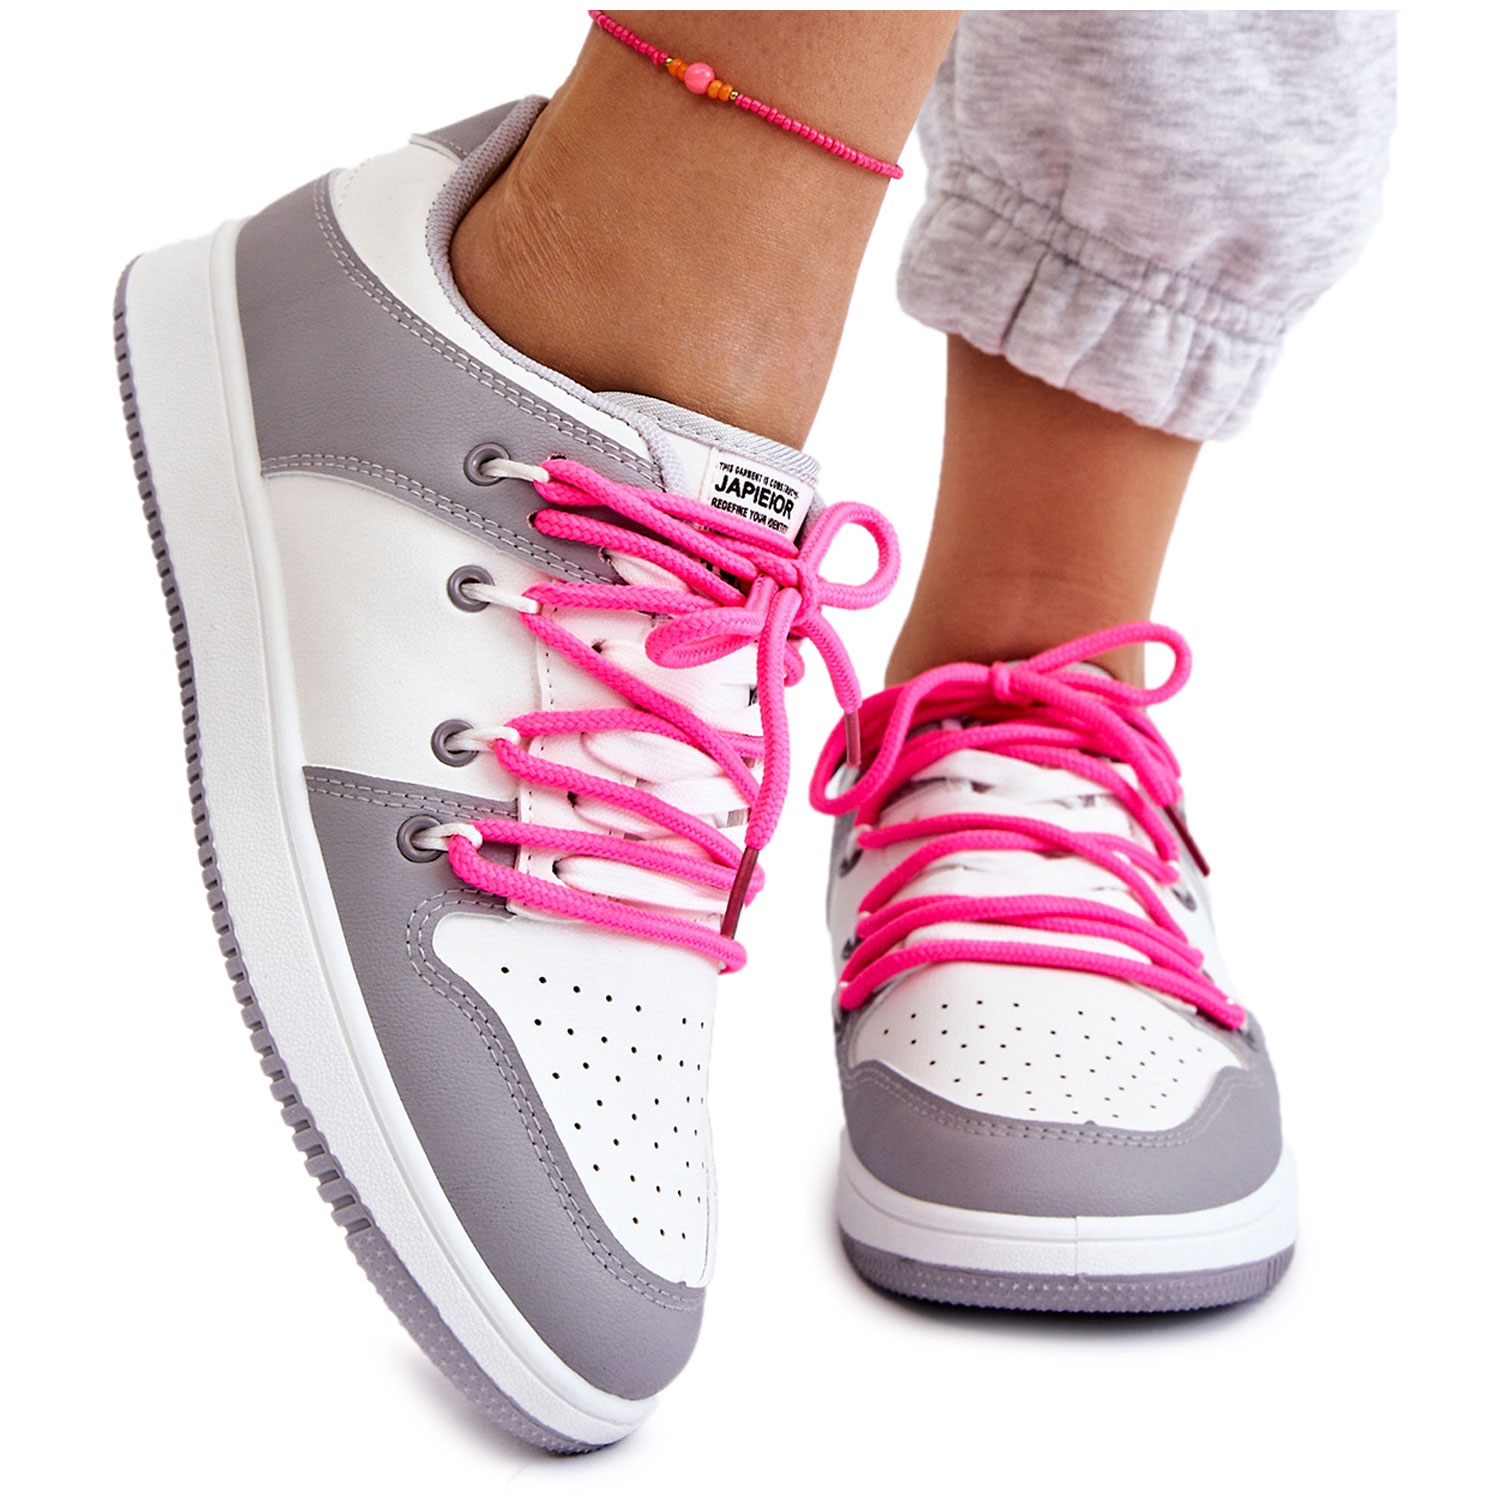 Marka niezdefiniowana Damskie Klasyczne Buty Sportowe Podwójnie Sznurowane Biało-Szare Jella białe